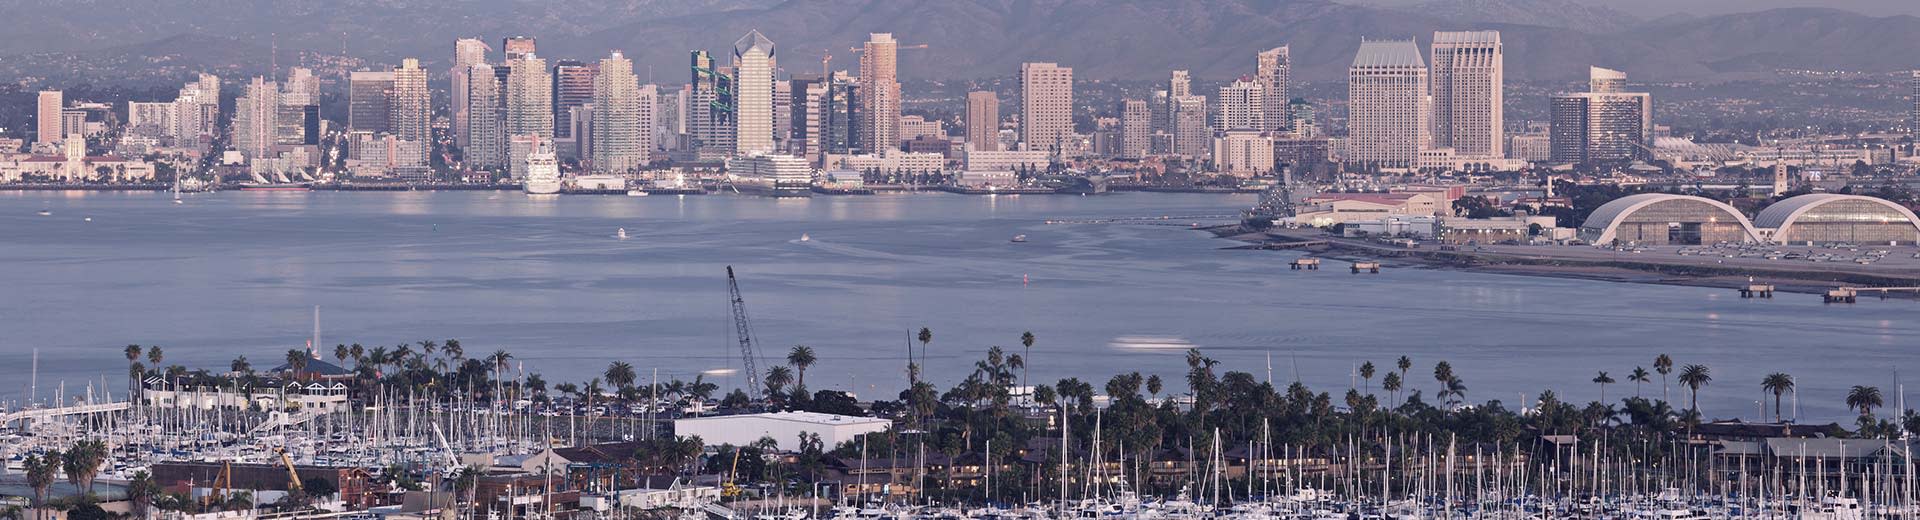 Las palmeras dominan el primer plano, mientras que a través de un cuerpo de agua se encuentran los edificios blancos y altos de San Diego en el calor.